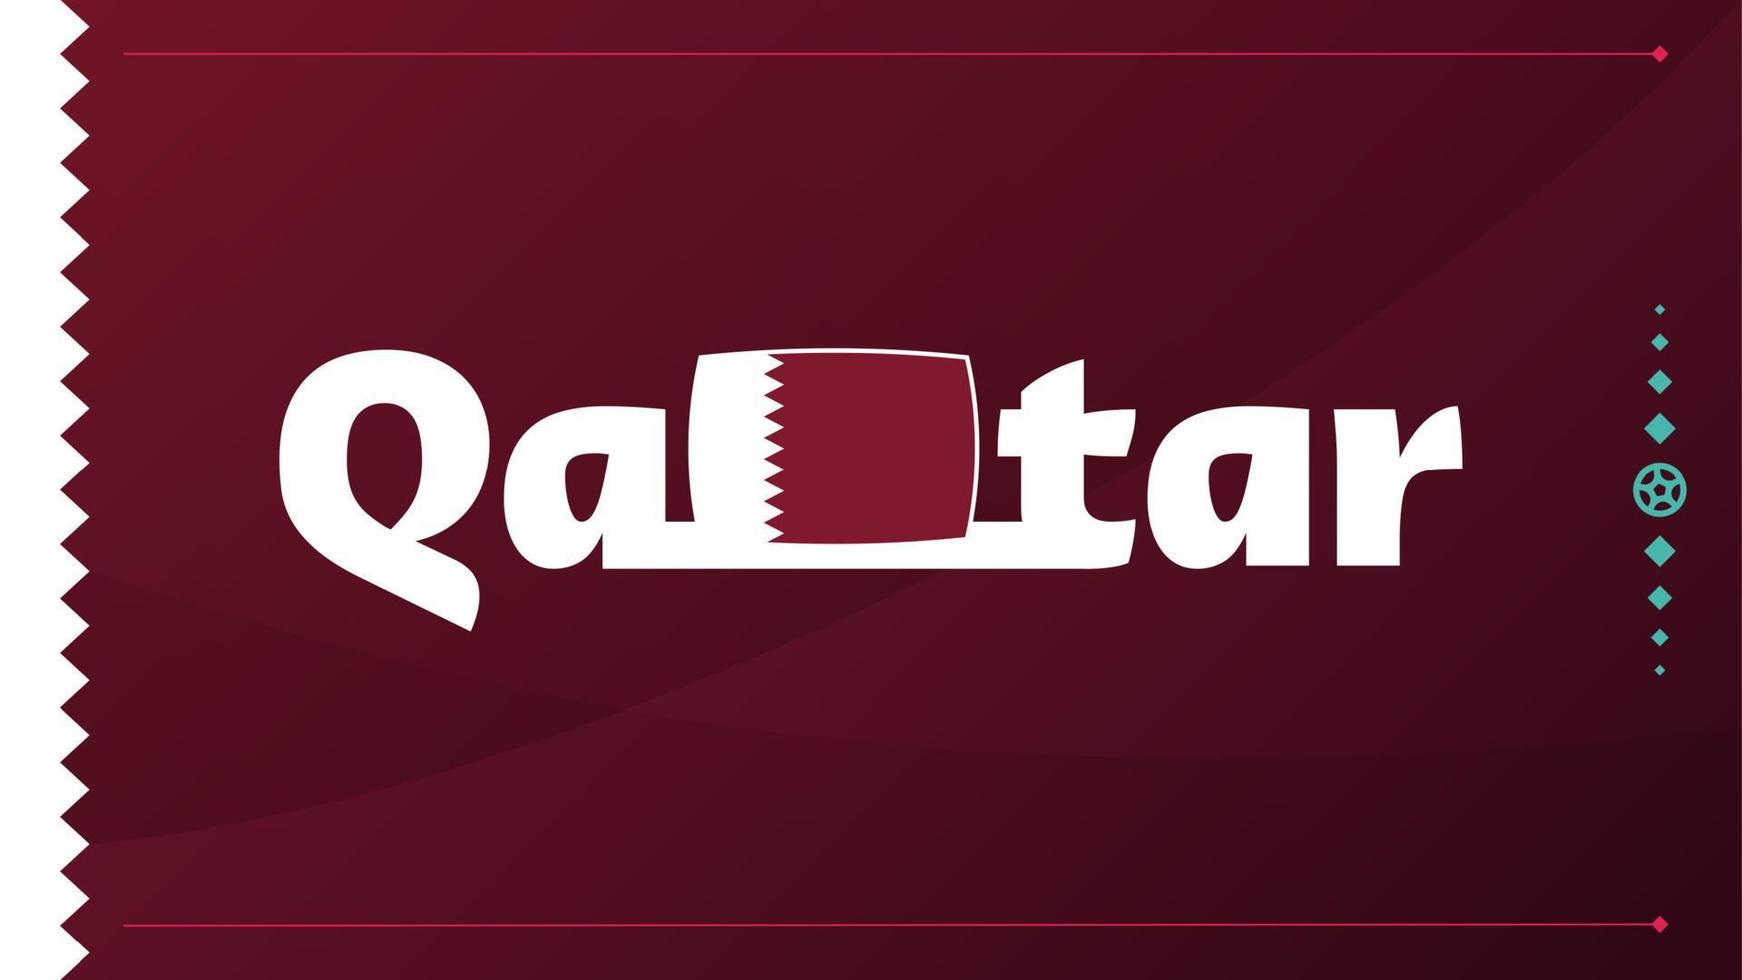 Qatars flagga och text på bakgrund av fotbollsturnering 2022. vektor illustration fotboll mönster för banner, kort, webbplats. vinröd färg nationalflagga qatar